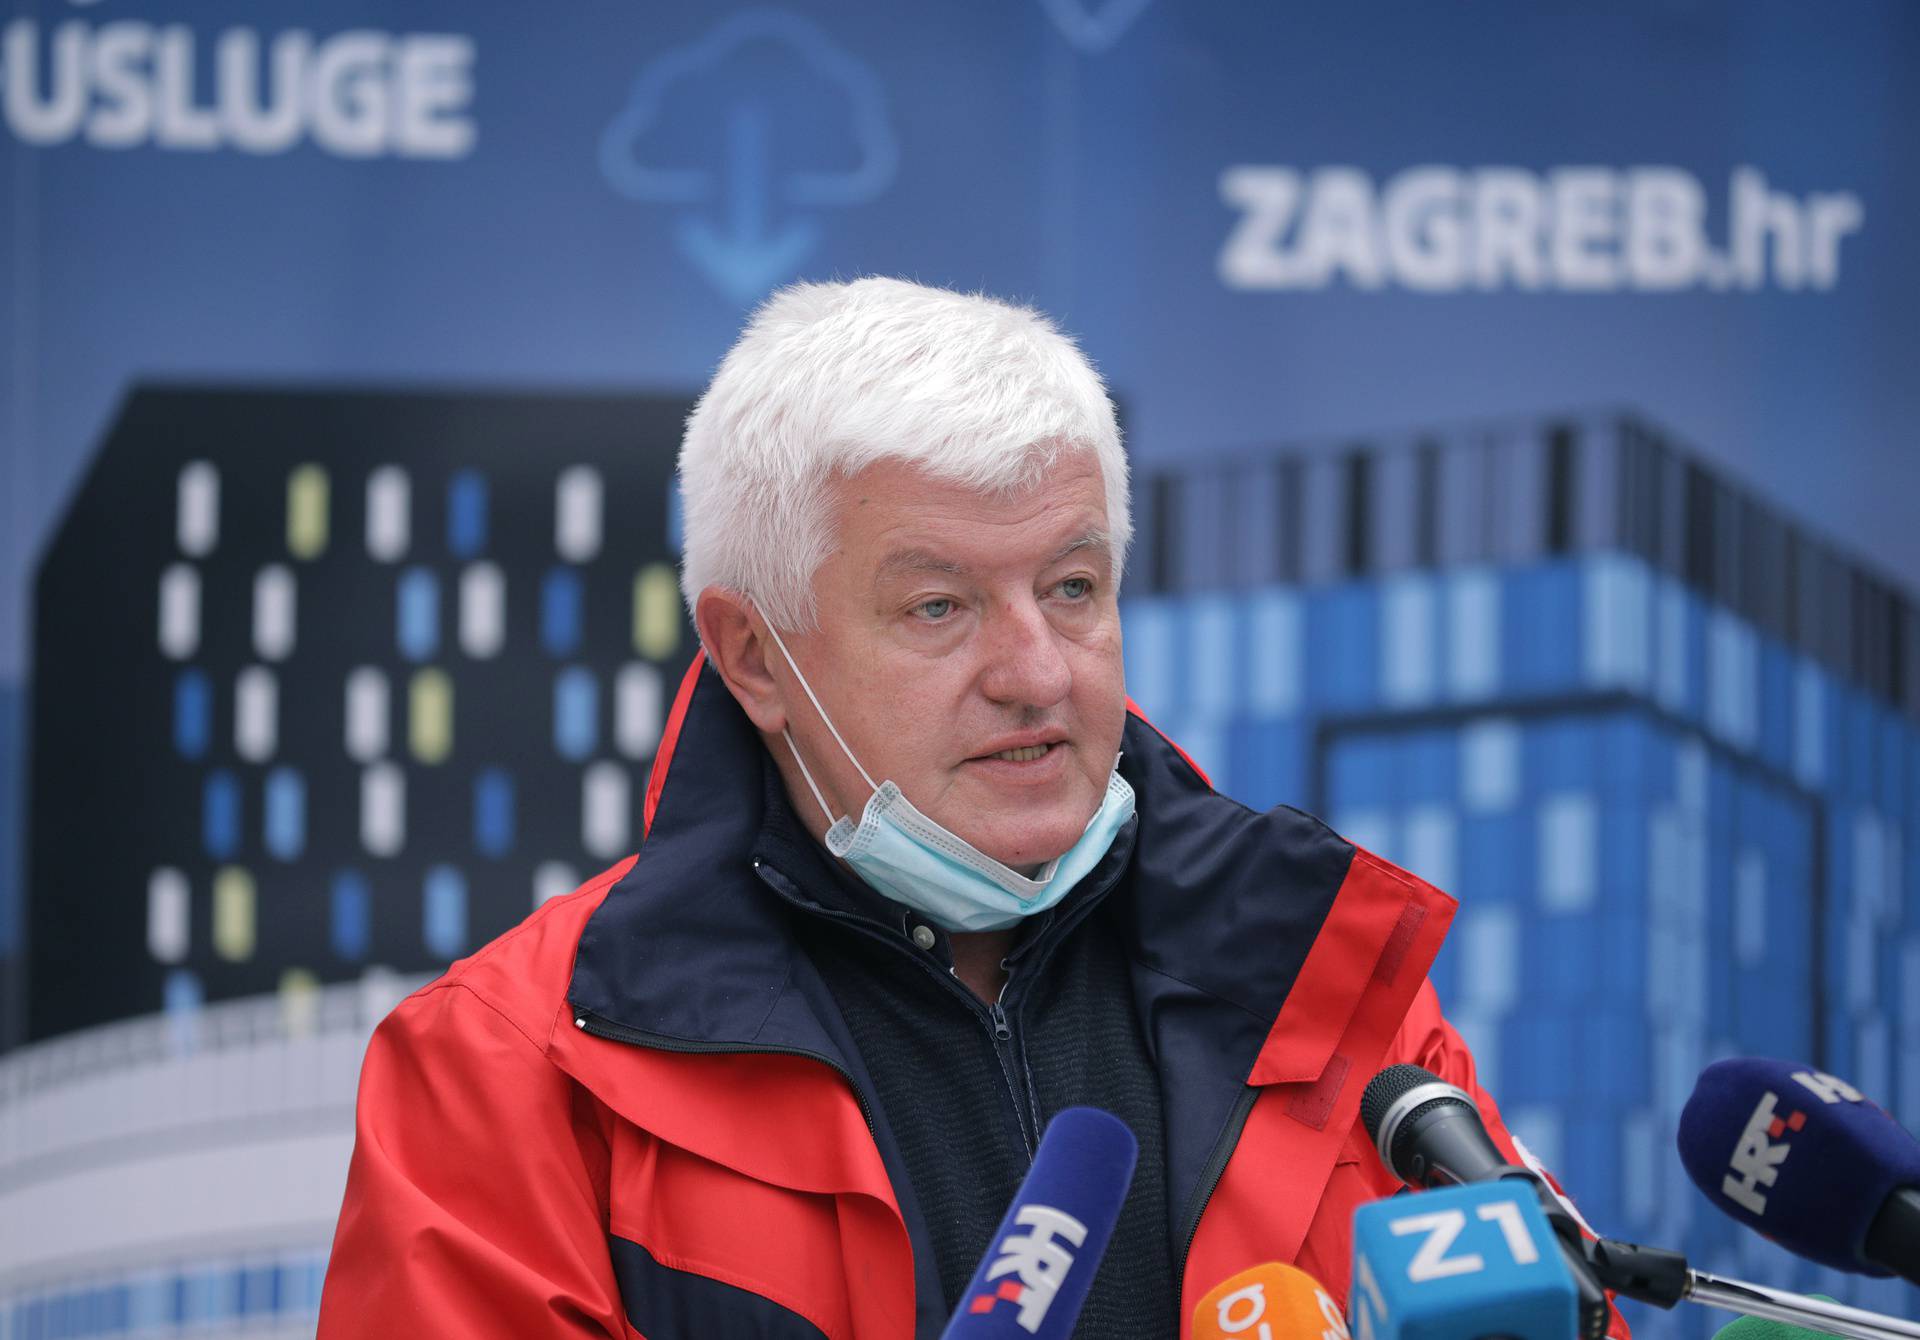 Šostar: U psihijatrijskoj bolnici u Zagrebu je zaraženo 20 ljudi